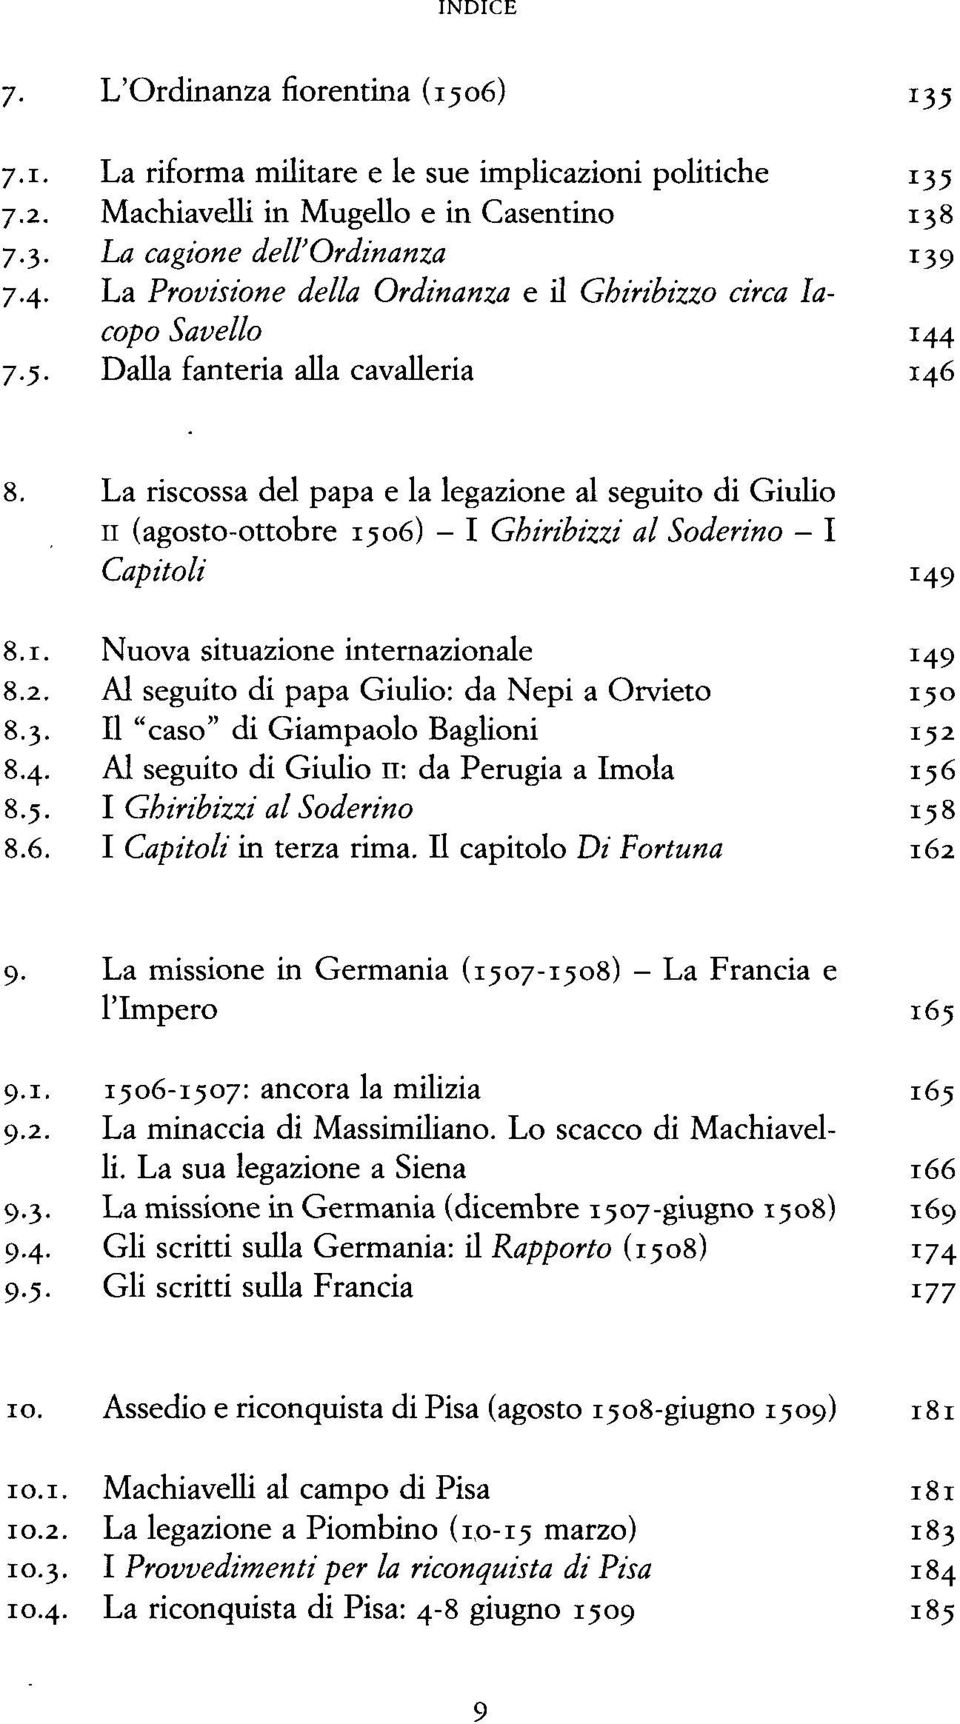 Dalla fanteria alla cavalleria 146 La riscossa del papa e la legazione al seguito di Giulio 11 (agosto-ottobre 1506) - I Ghiribizzi al Soderino I Capitoli 149 :.i. Nuova situazione internazionale 149 ;.